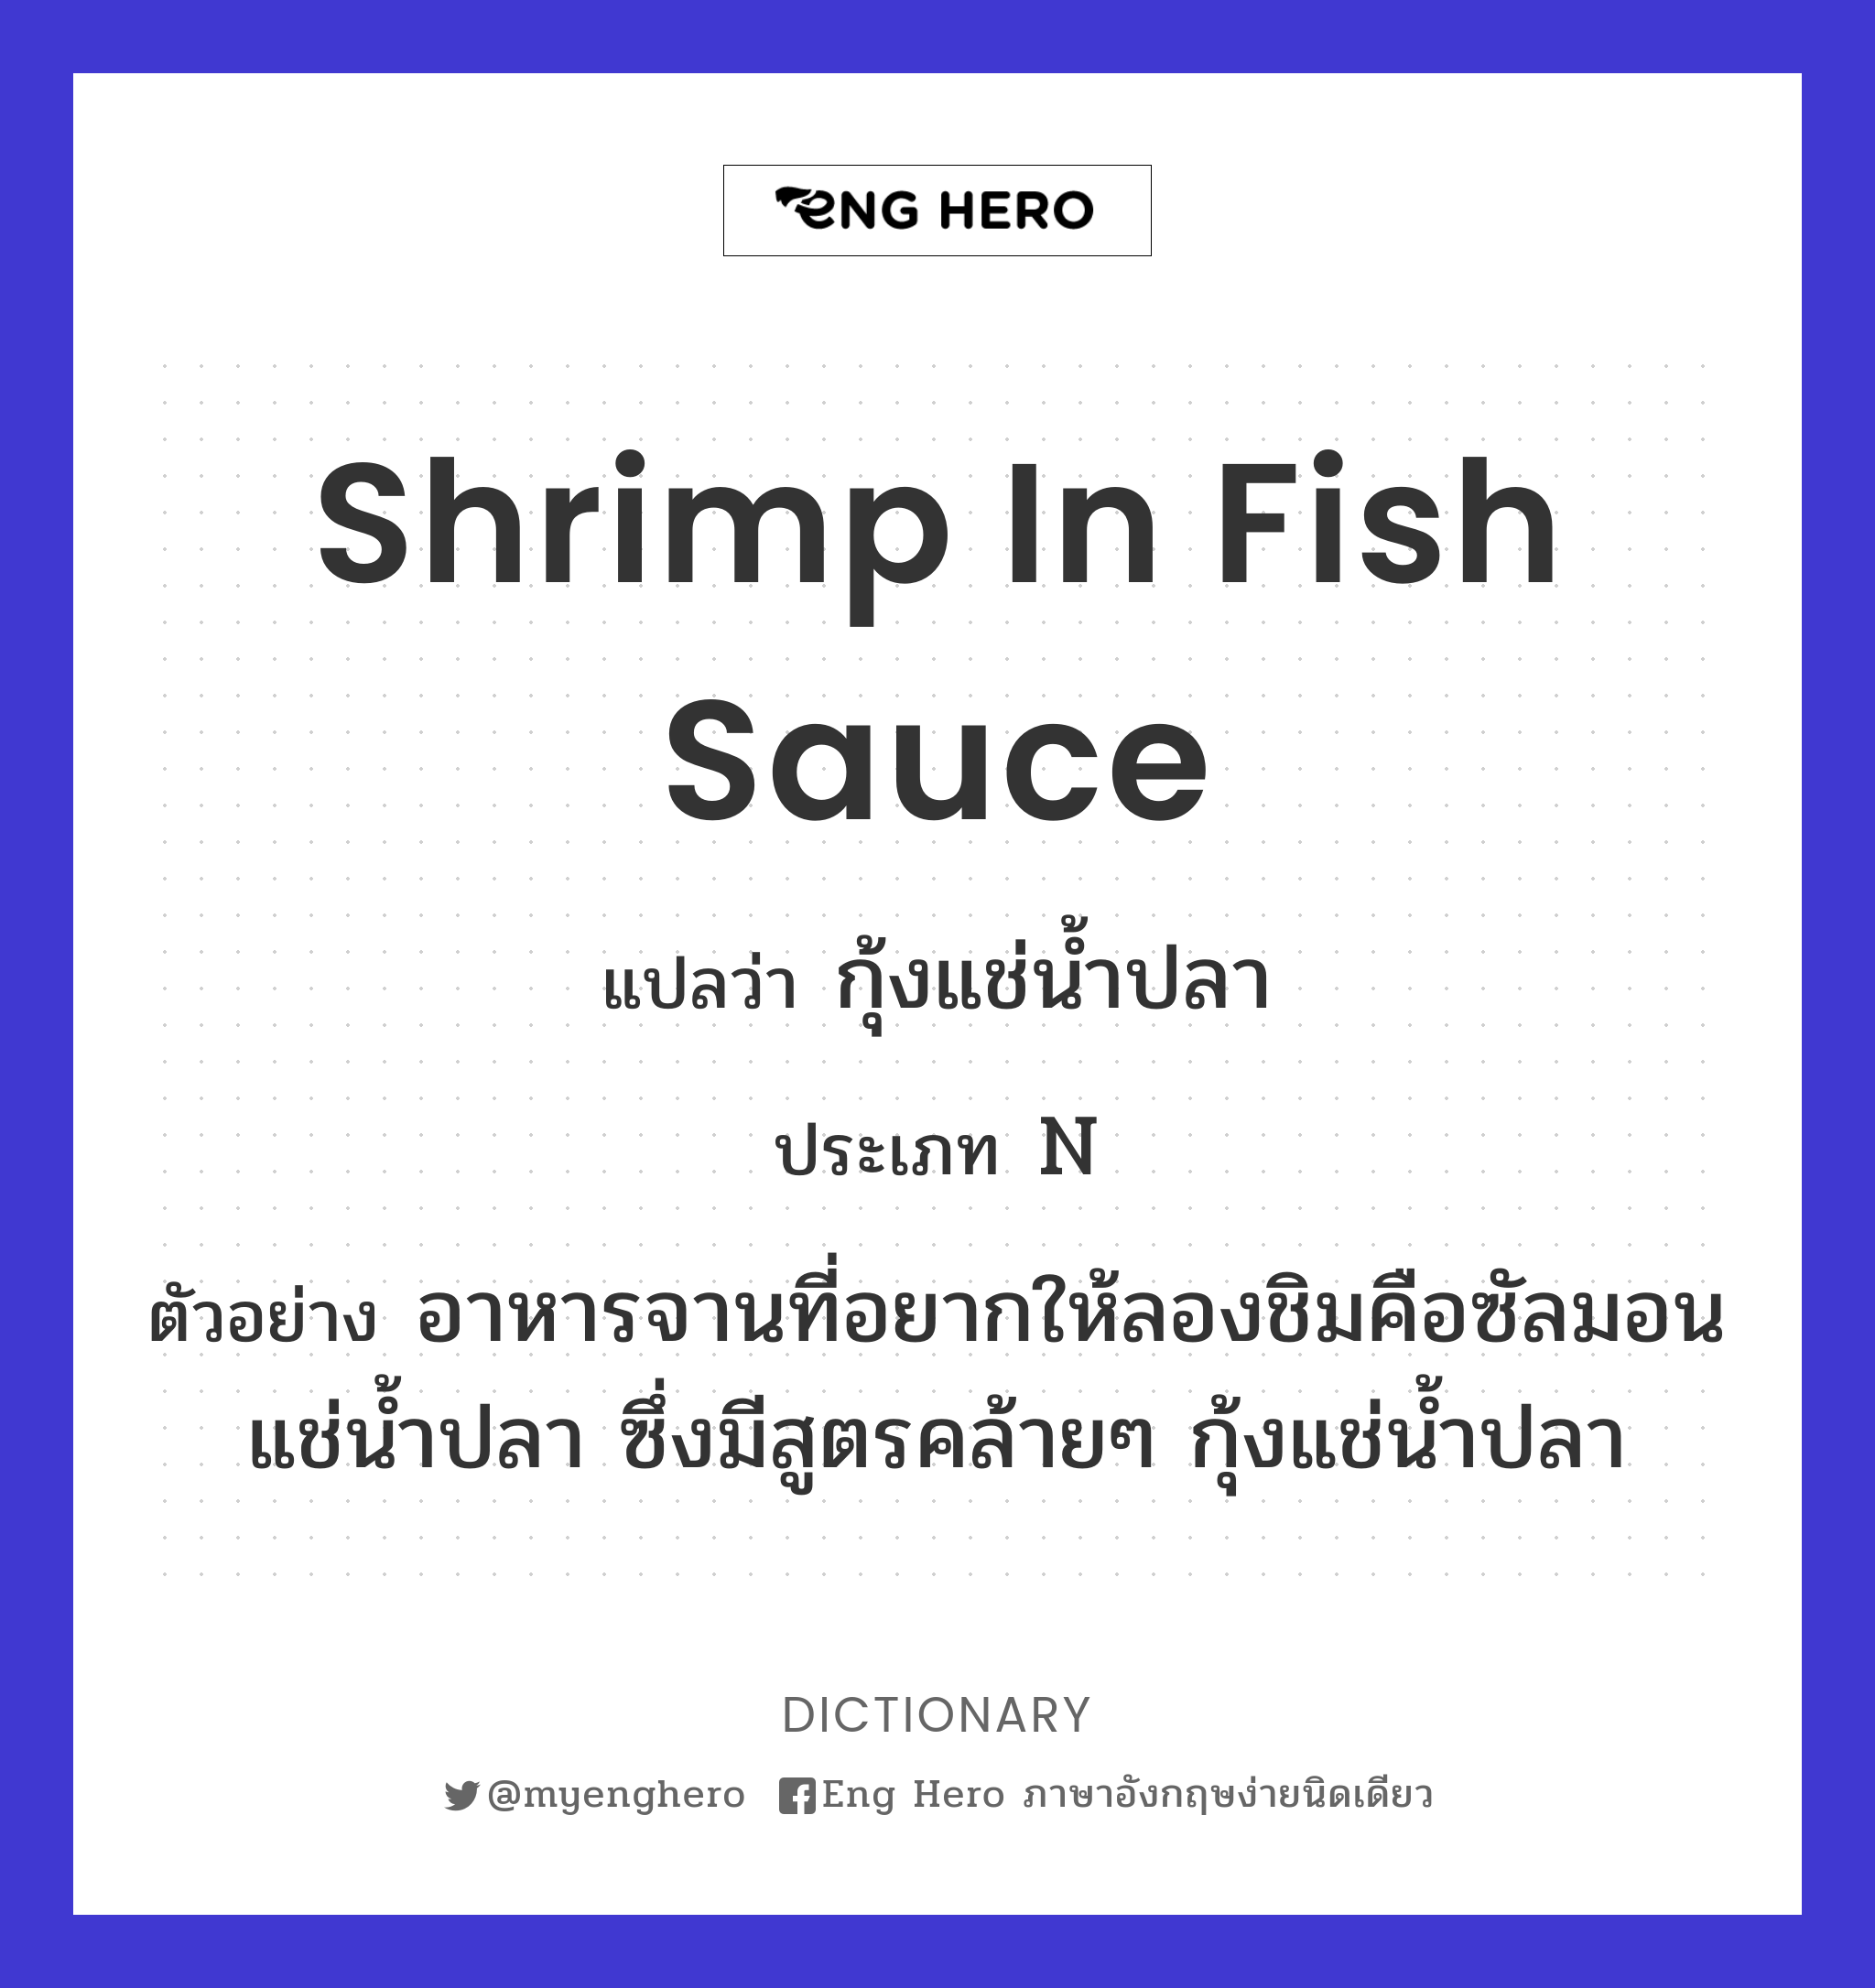 shrimp in fish sauce